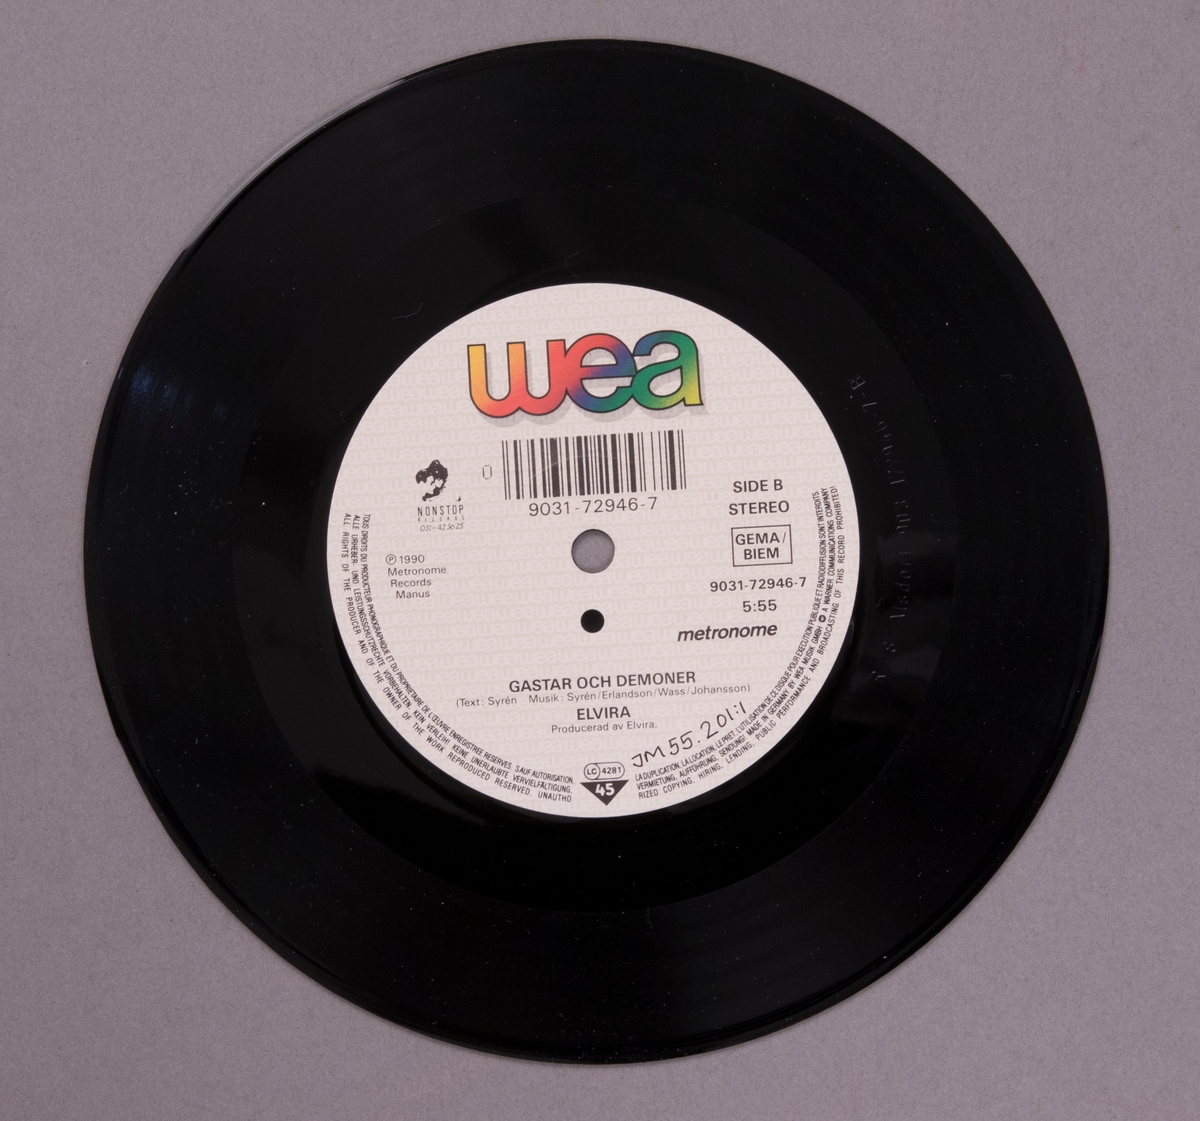 Singel-skiva av svart vinyl med ljusgul papperetikett, i omslag av papper med blå-svart fotografi på framsidan.

Innehåll
Sida A: Bussen trill Gränna
Sida B: Gastar och demoner

JM 55201:1, Skiva
JM 55201:2, Omslag